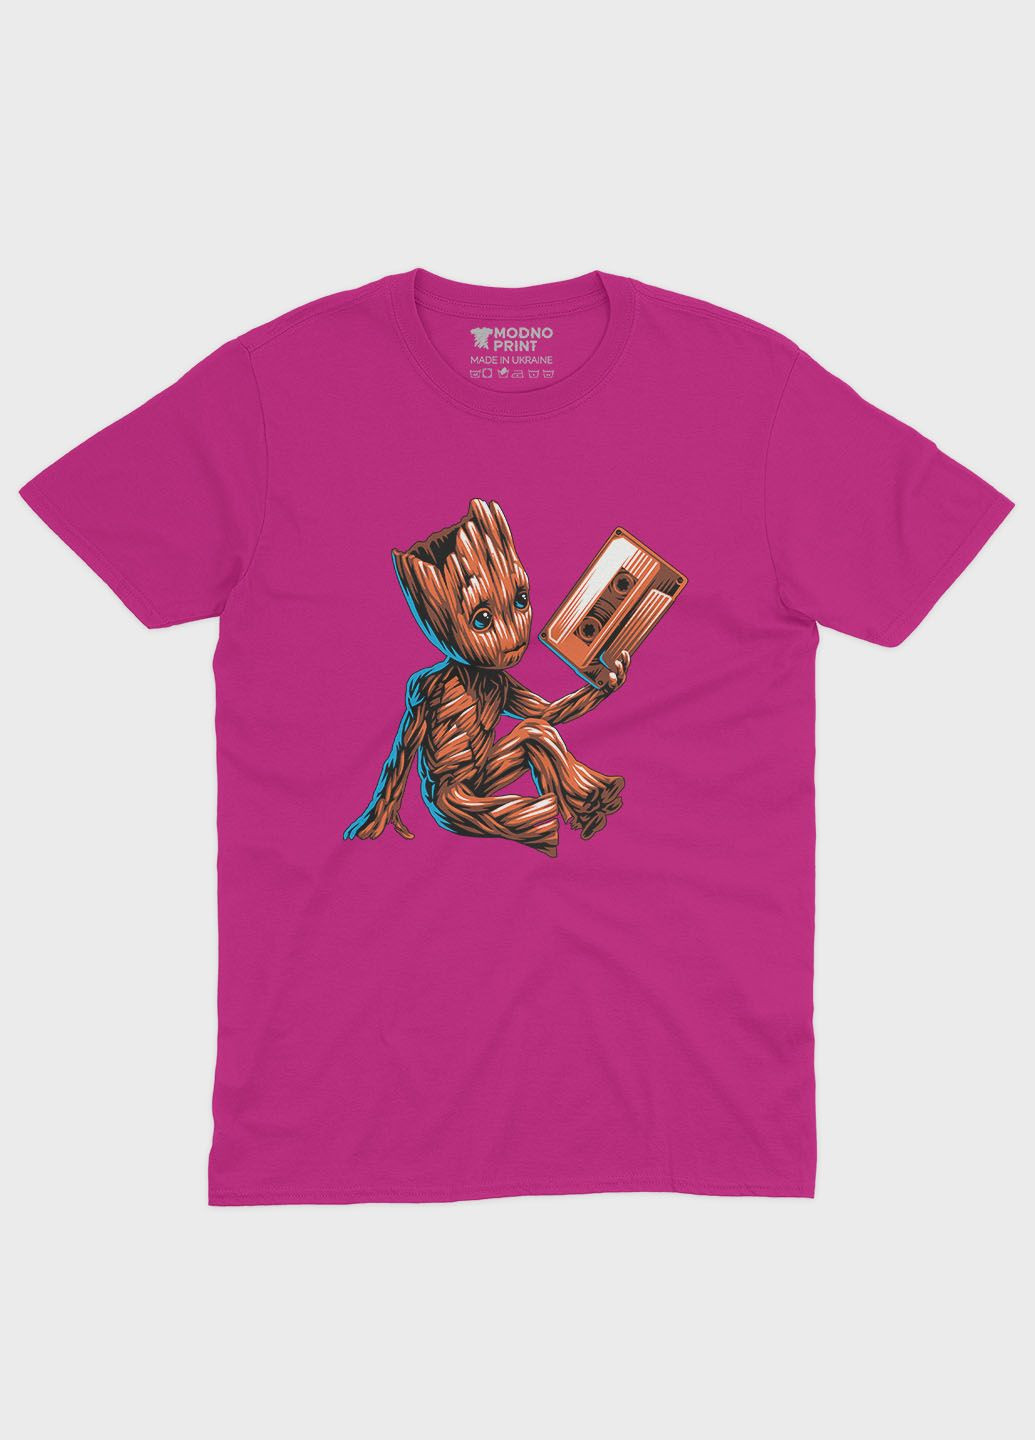 Розовая демисезонная футболка для мальчика с принтом супергероев - часовые галактики (ts001-1-fuxj-006-017-004-b) Modno